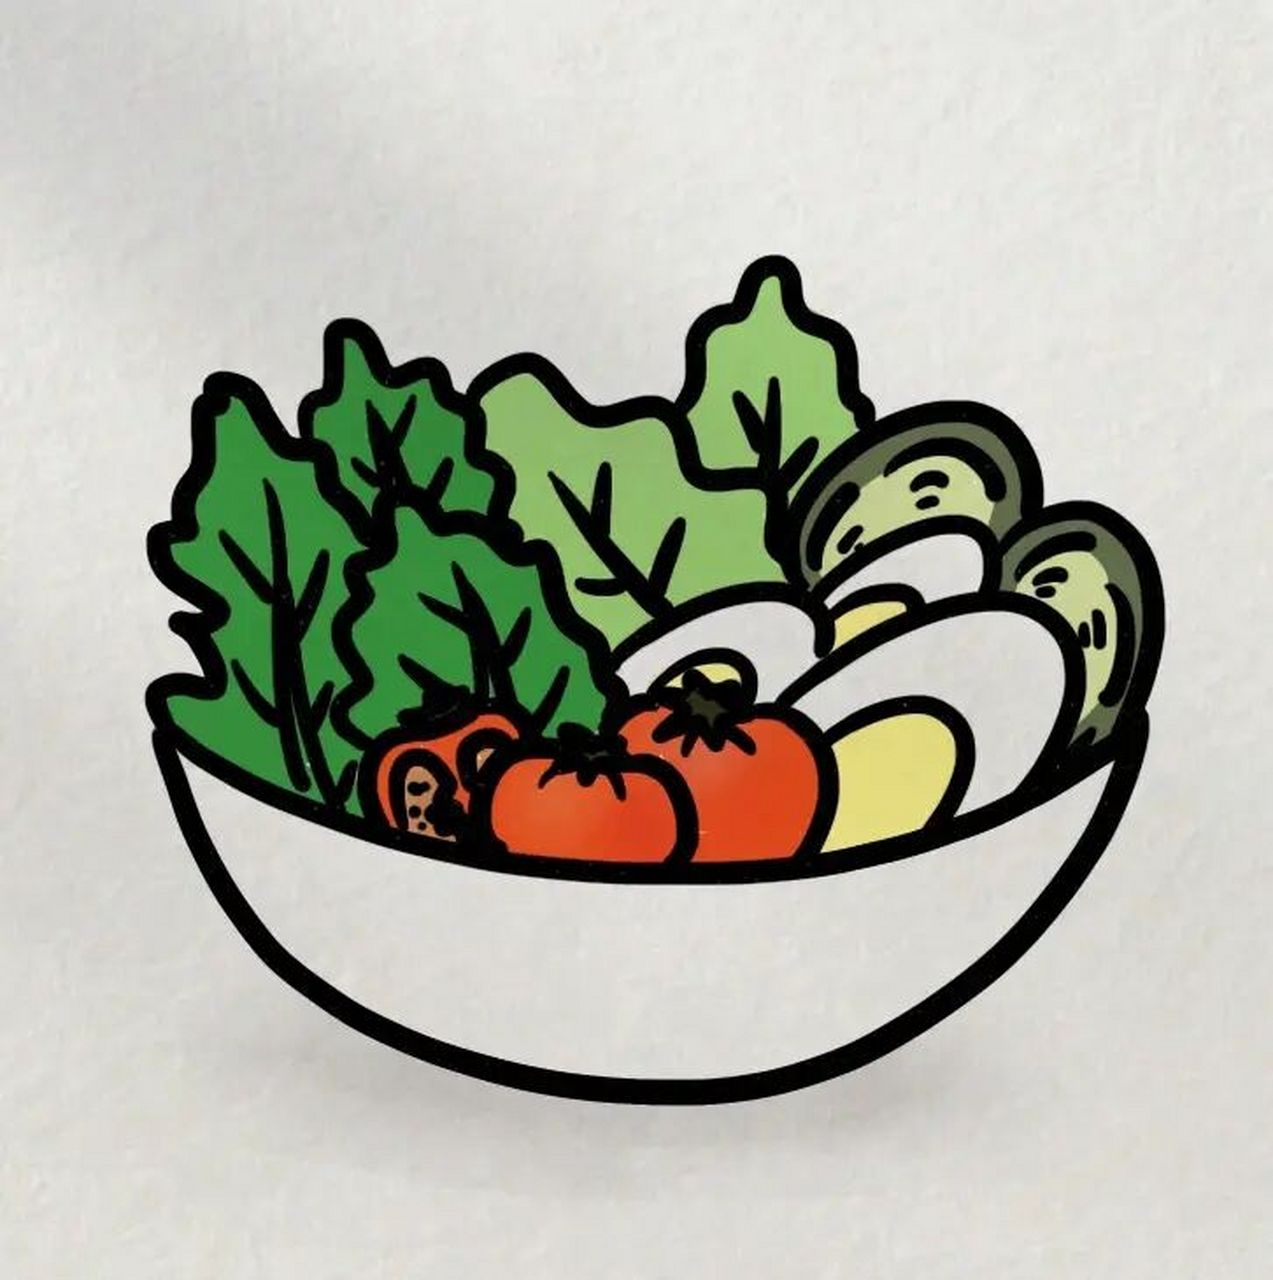 蔬菜水果沙拉简笔画图片